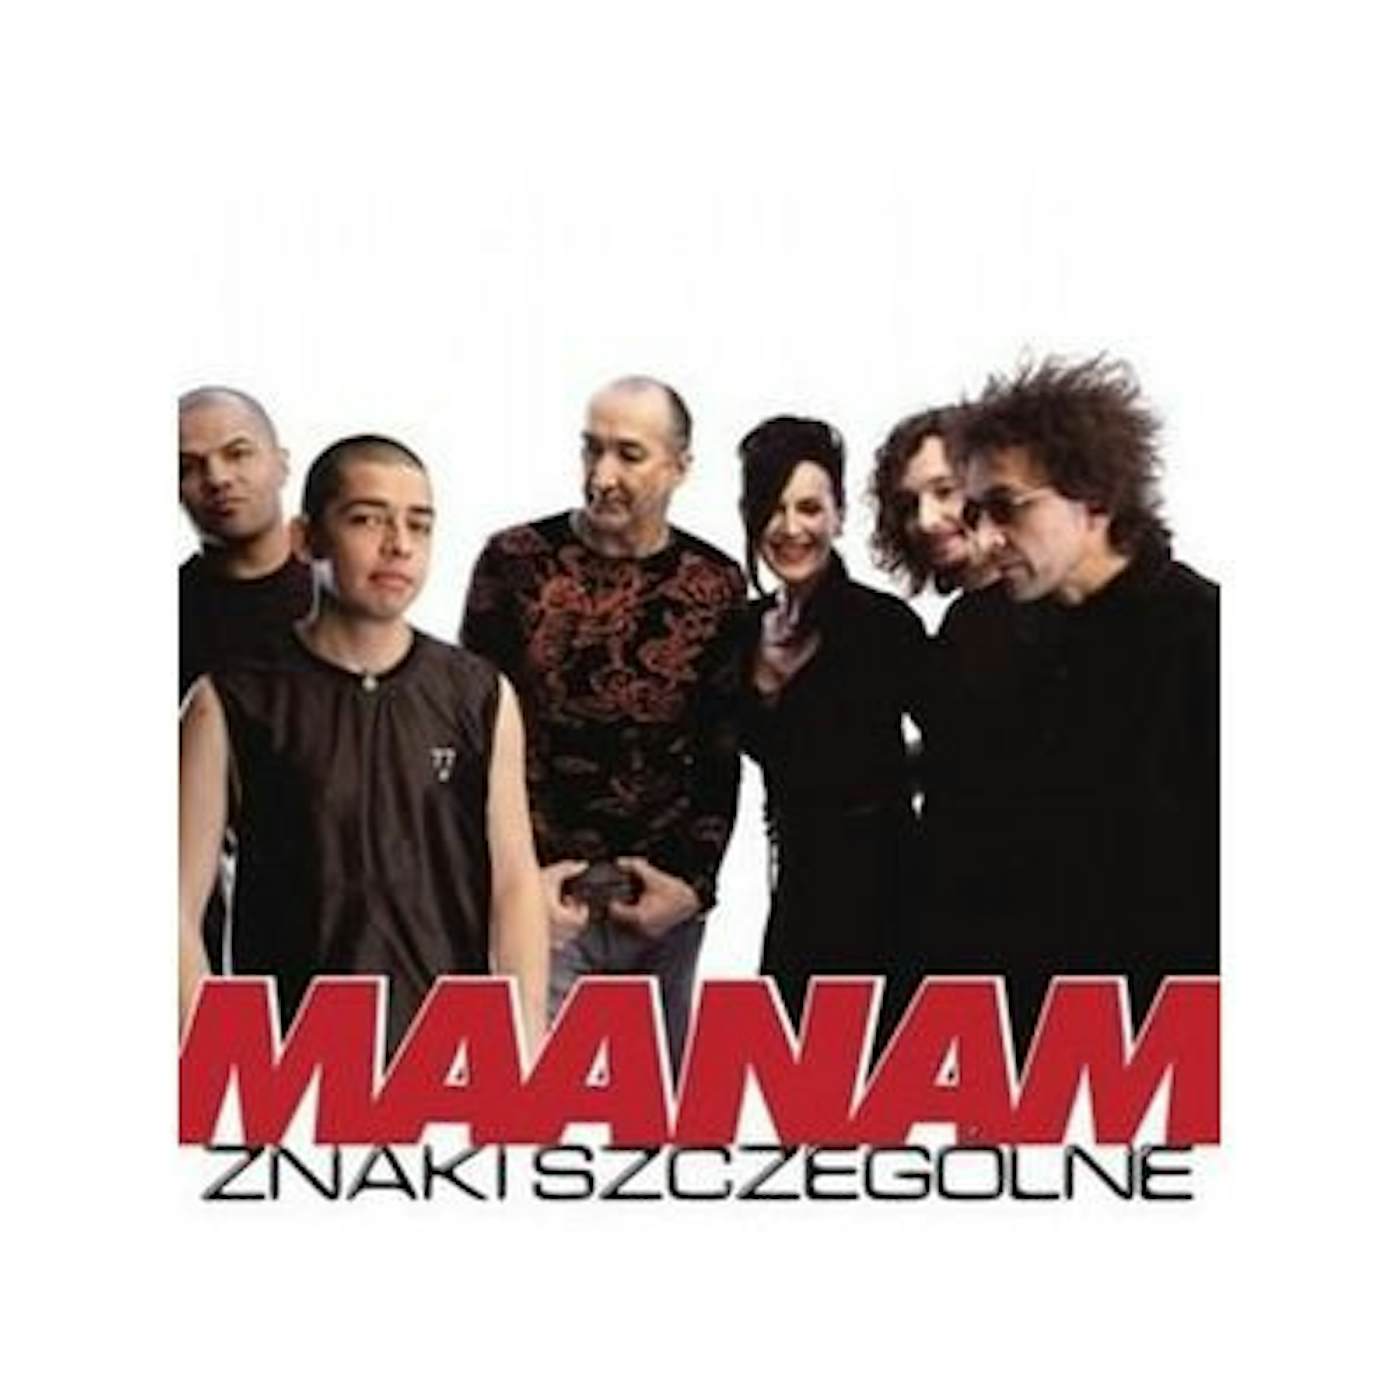 Maanam ZNAKI SZCZEGOLNE CD